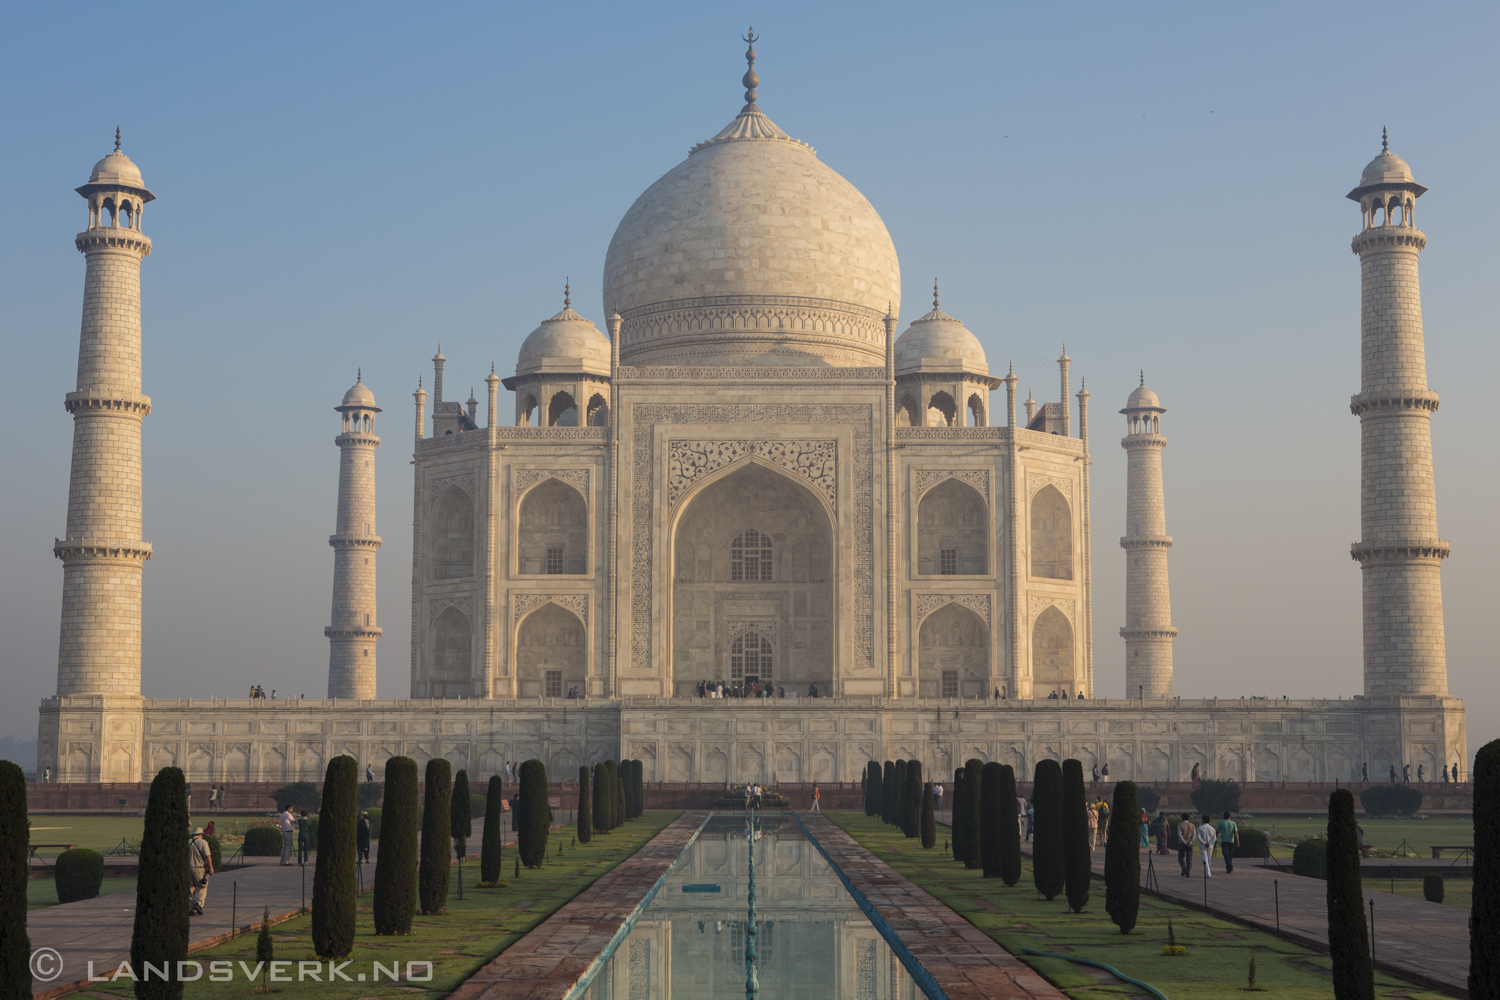 Taj Mahal. Agra, India. 

(Canon EOS 5D Mark III / Canon EF 24-70mm f/2.8 L USM)